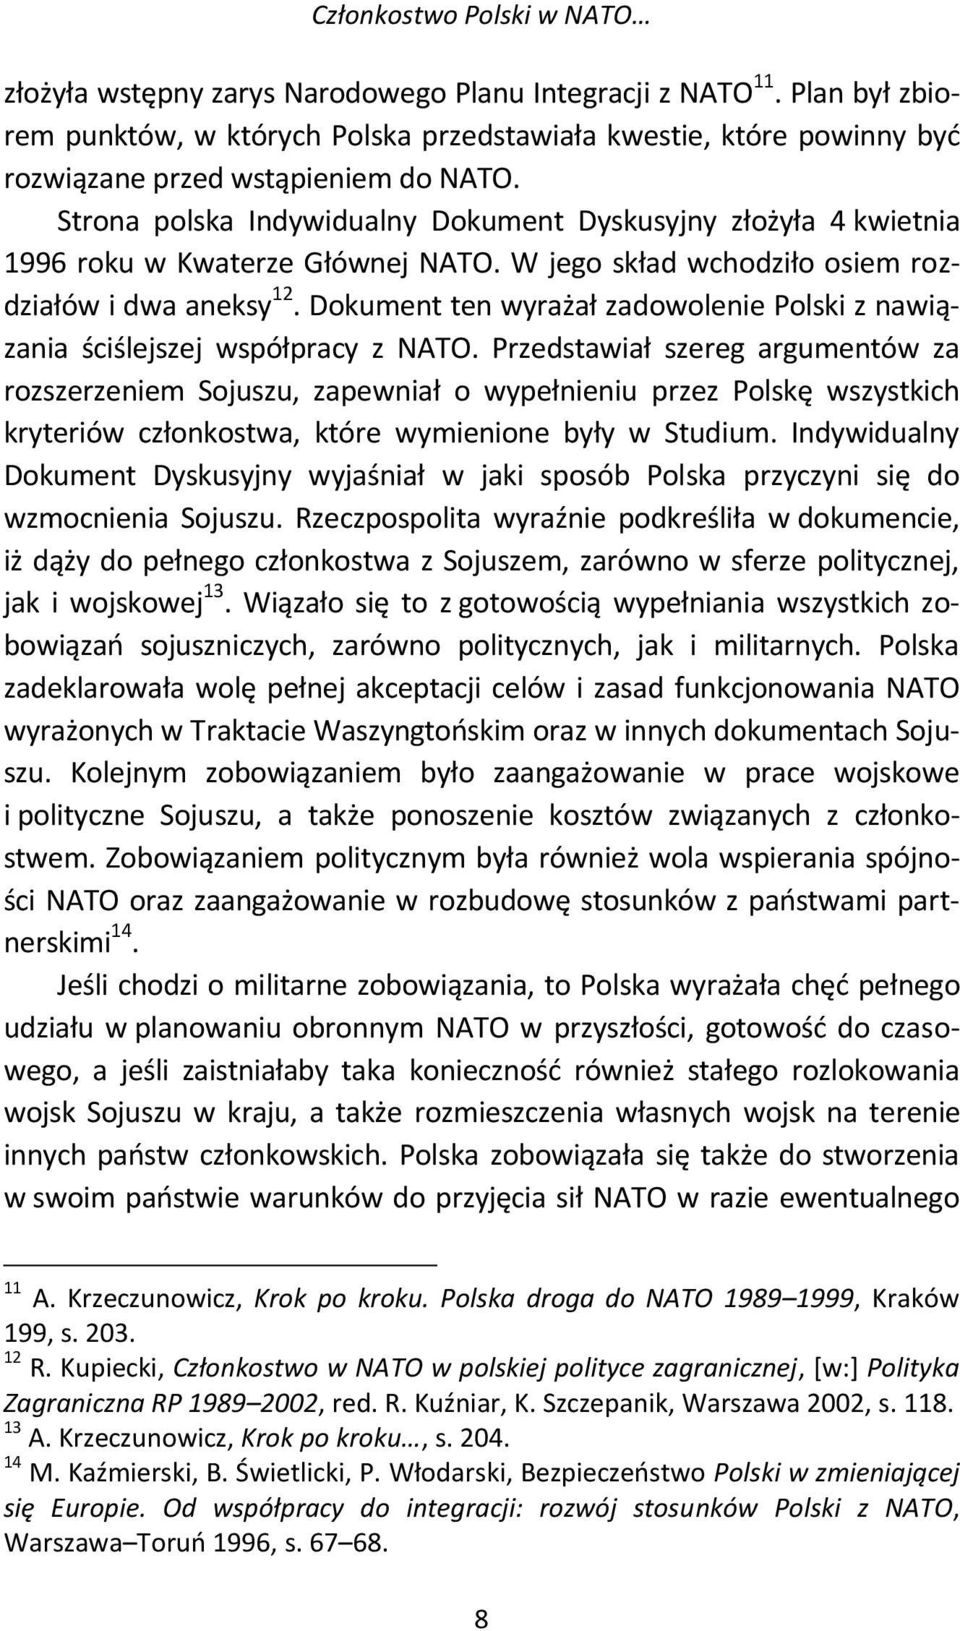 Strona polska Indywidualny Dokument Dyskusyjny złożyła 4 kwietnia 1996 roku w Kwaterze Głównej NATO. W jego skład wchodziło osiem rozdziałów i dwa aneksy 12.